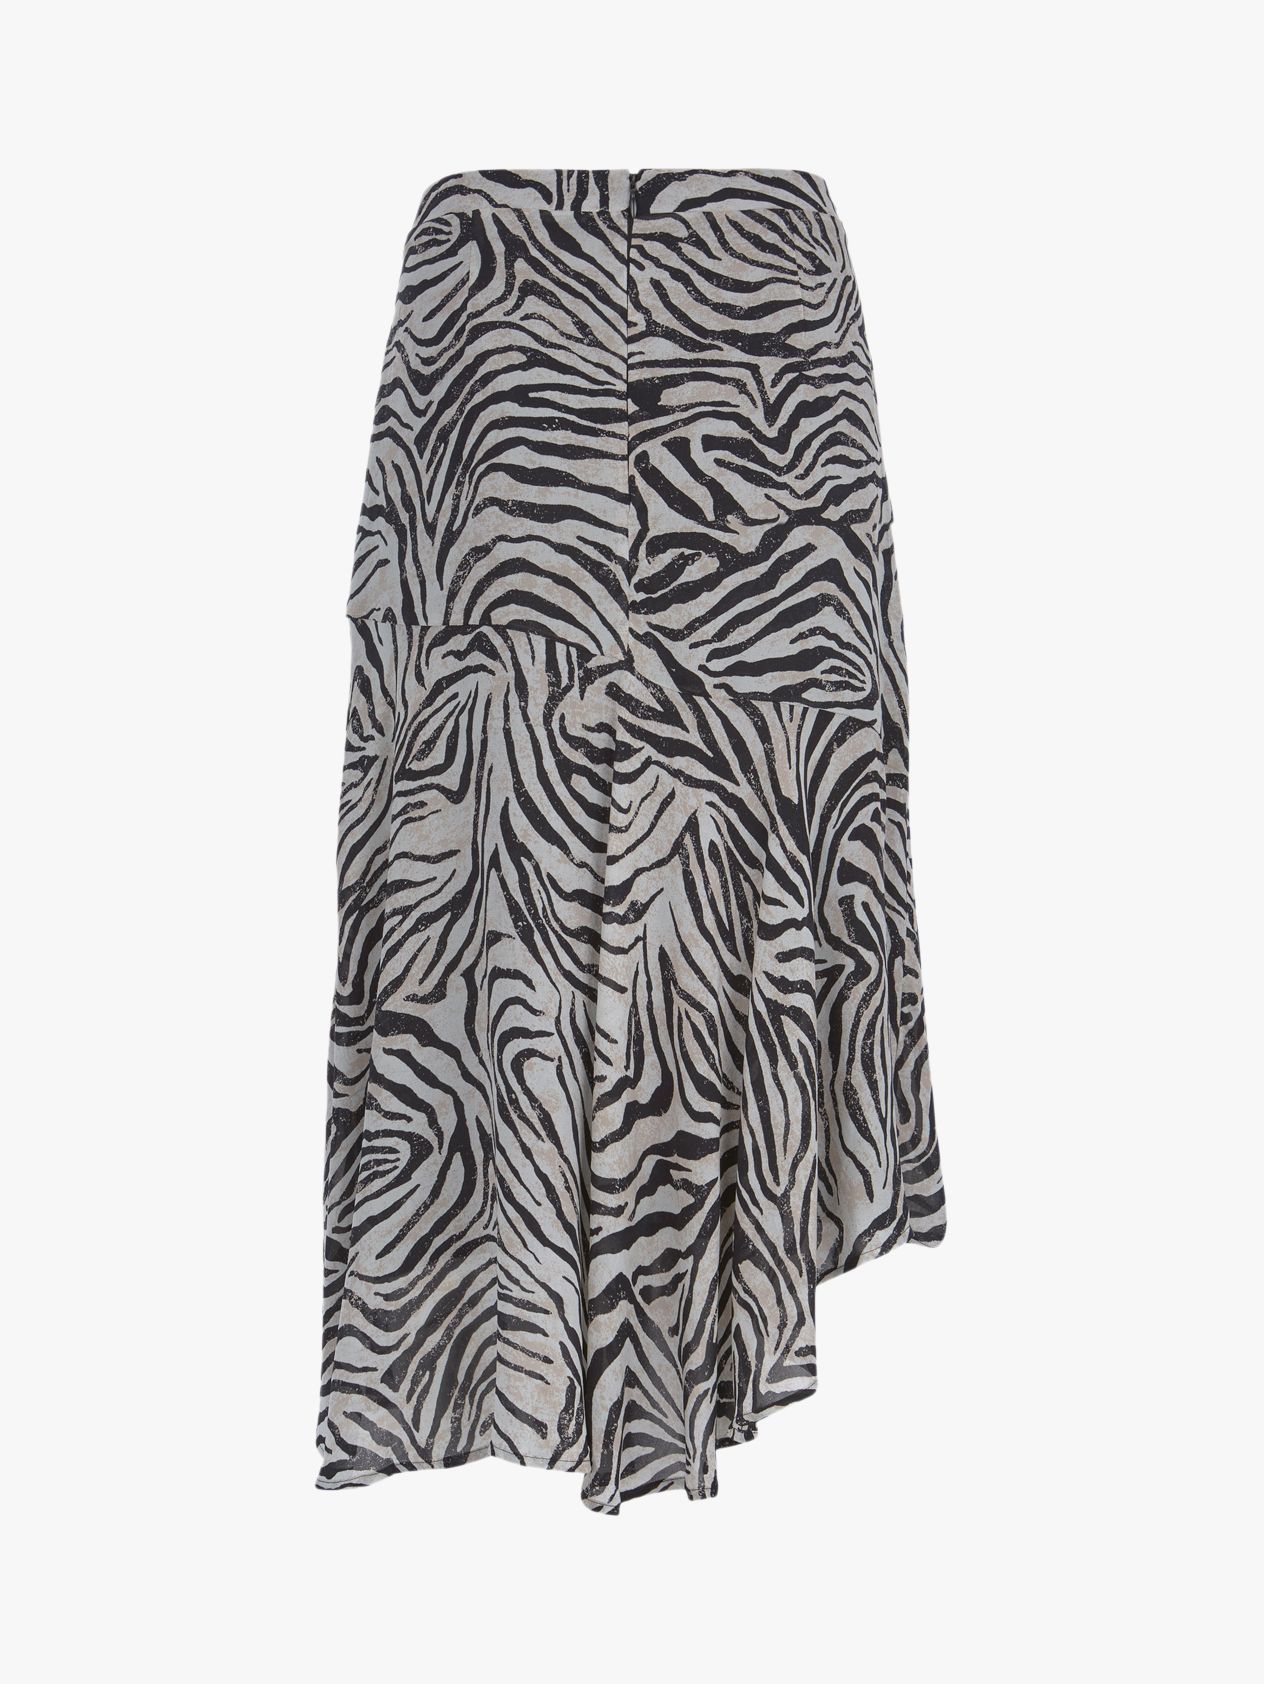 Mint Velvet Naomi Zebra Print Midi Skirt, Black/White, 6